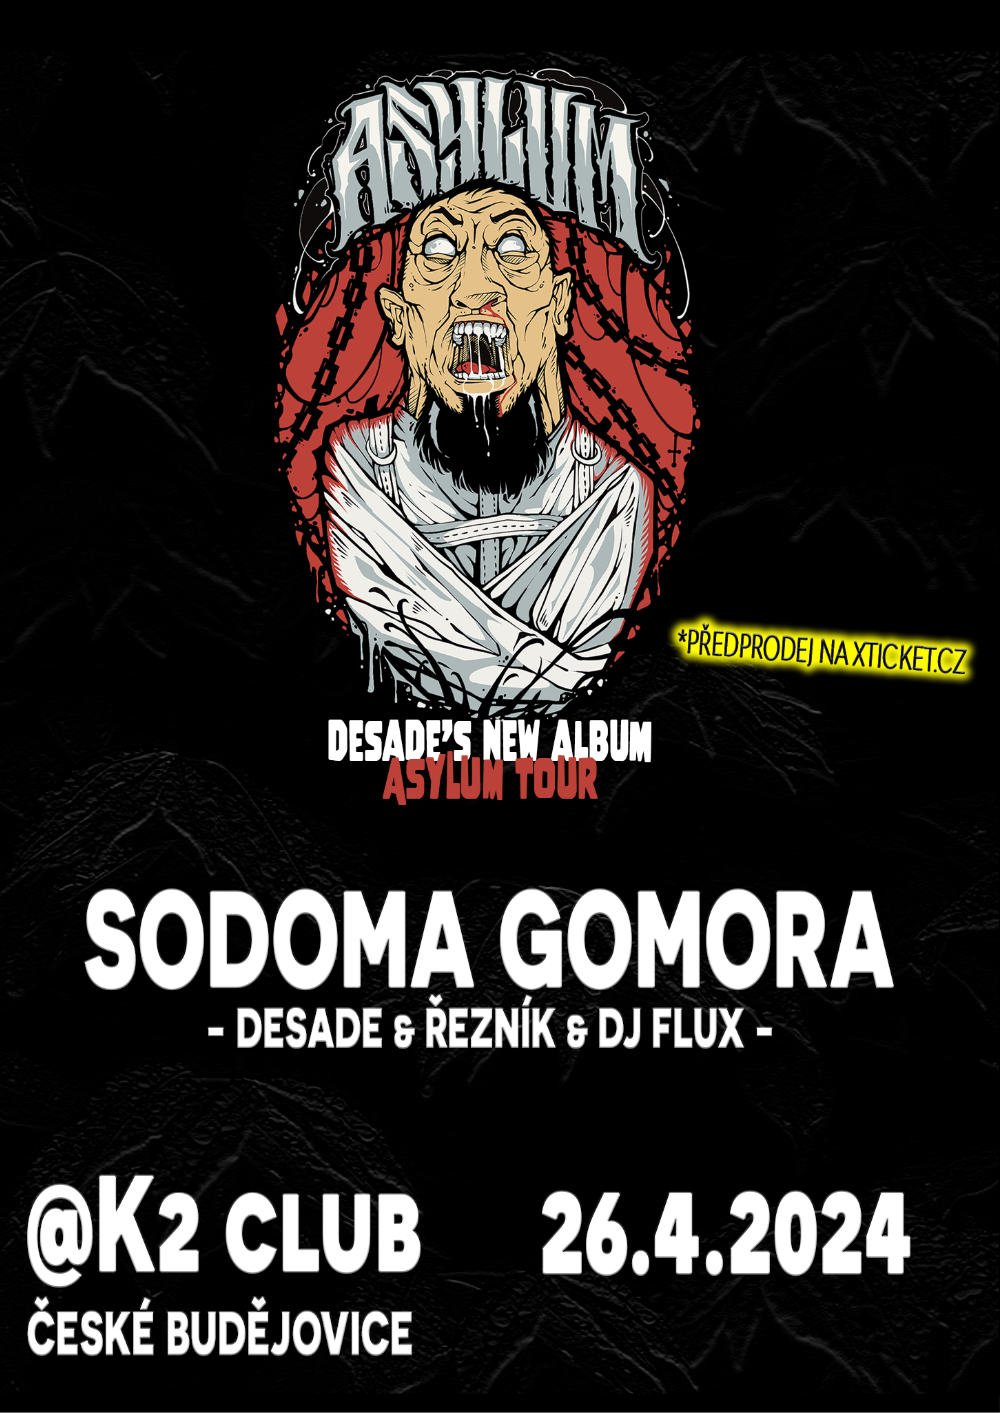 Sodoma Gomora I DESADE Asylum cd tour